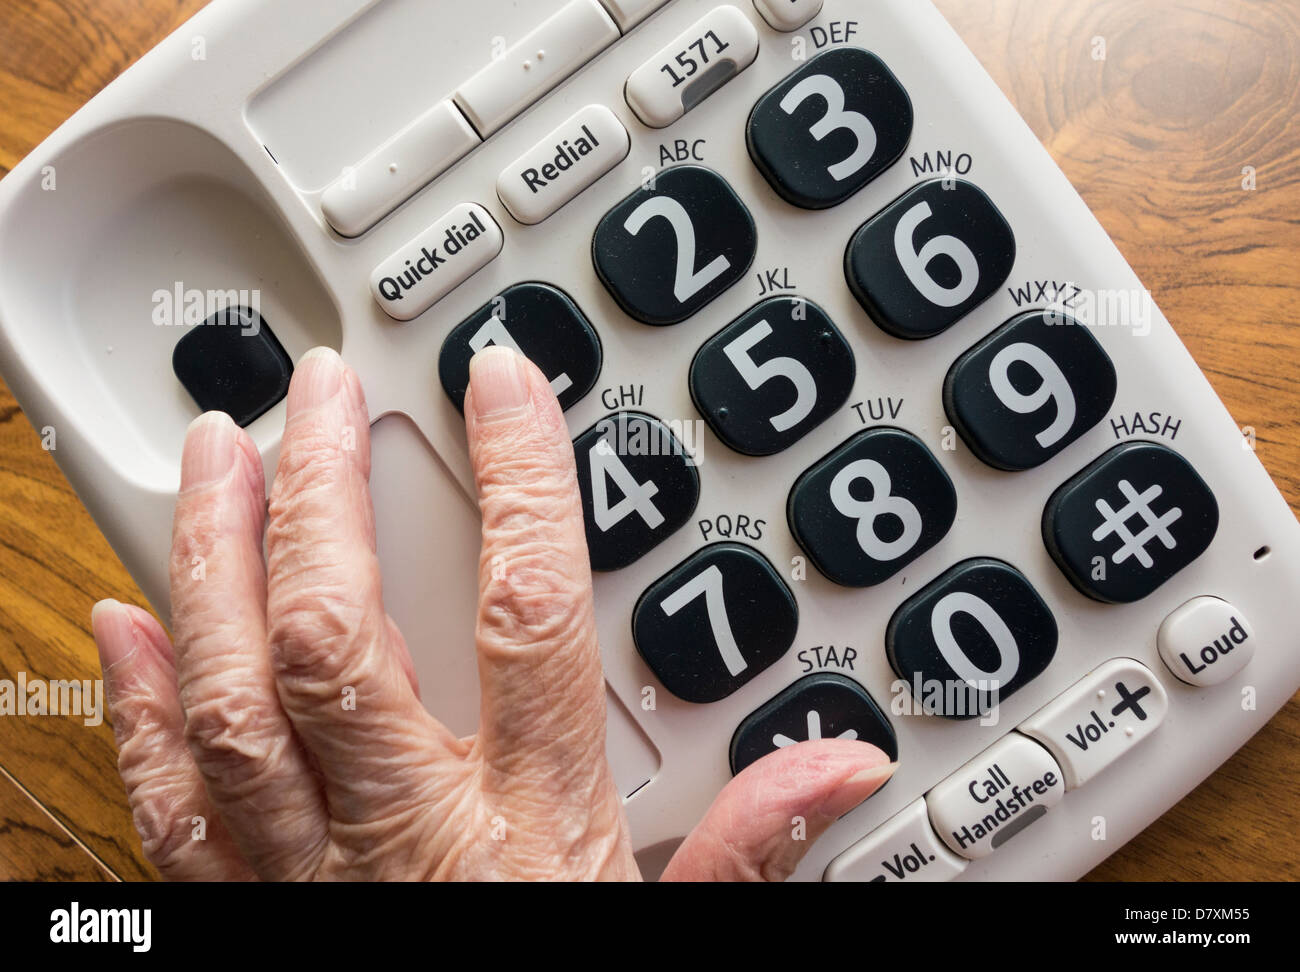 Ältere Dame mit Sehstörungen, die große Taste Telefon Nummer 1 anpressen Stockfoto